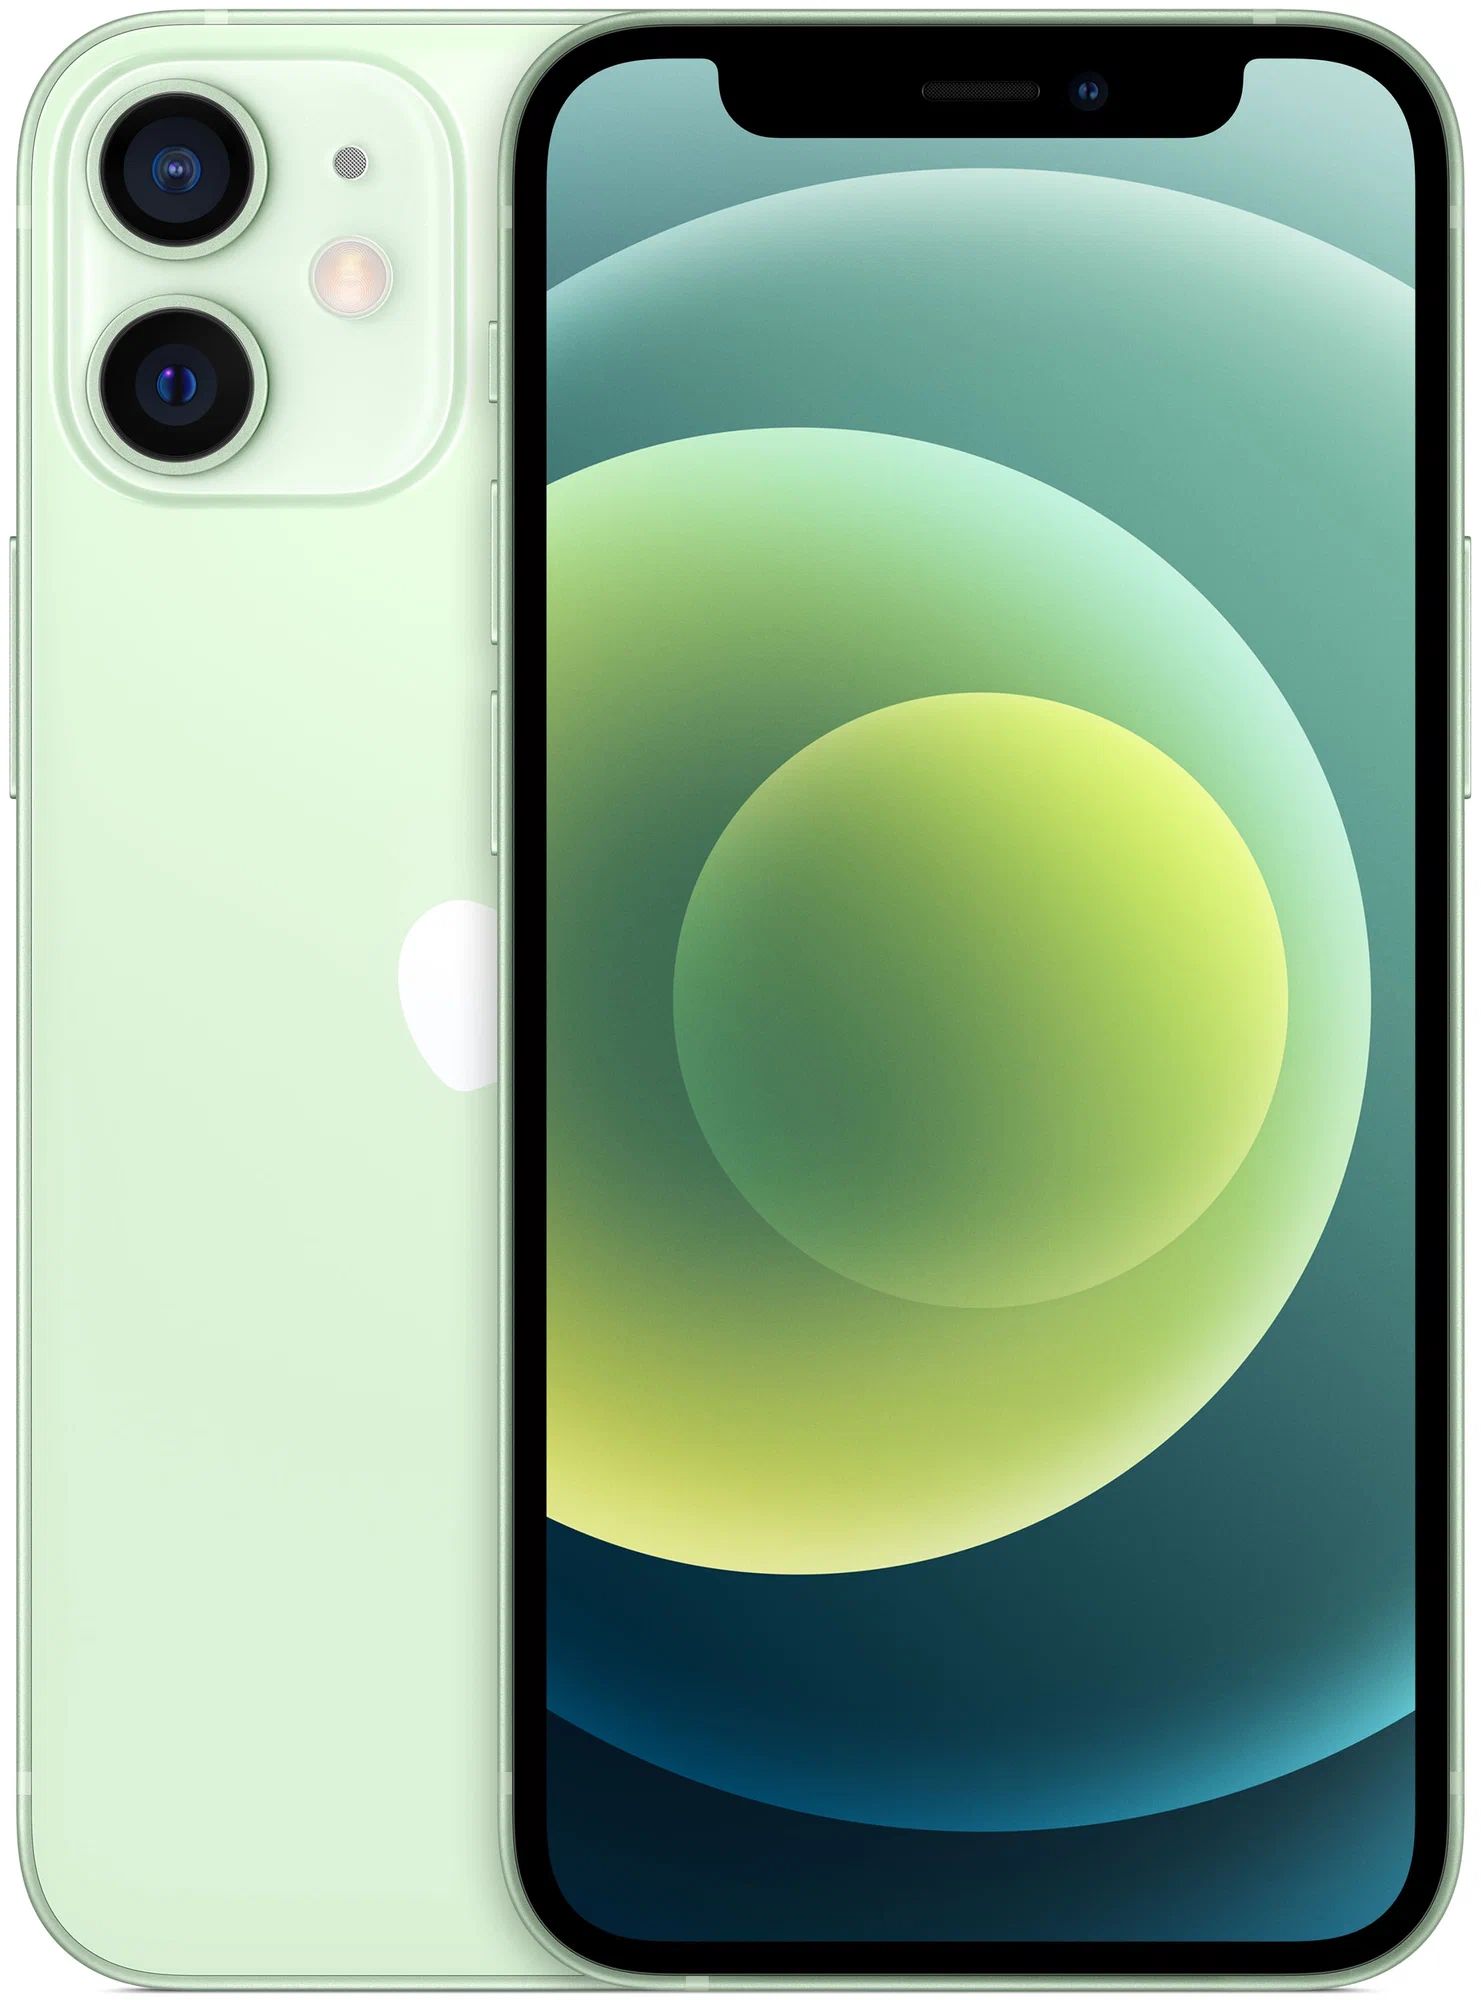 Смартфон Apple iPhone 12 mini 4/64Gb (MGE23ZA/A) Green отлияное состояние;